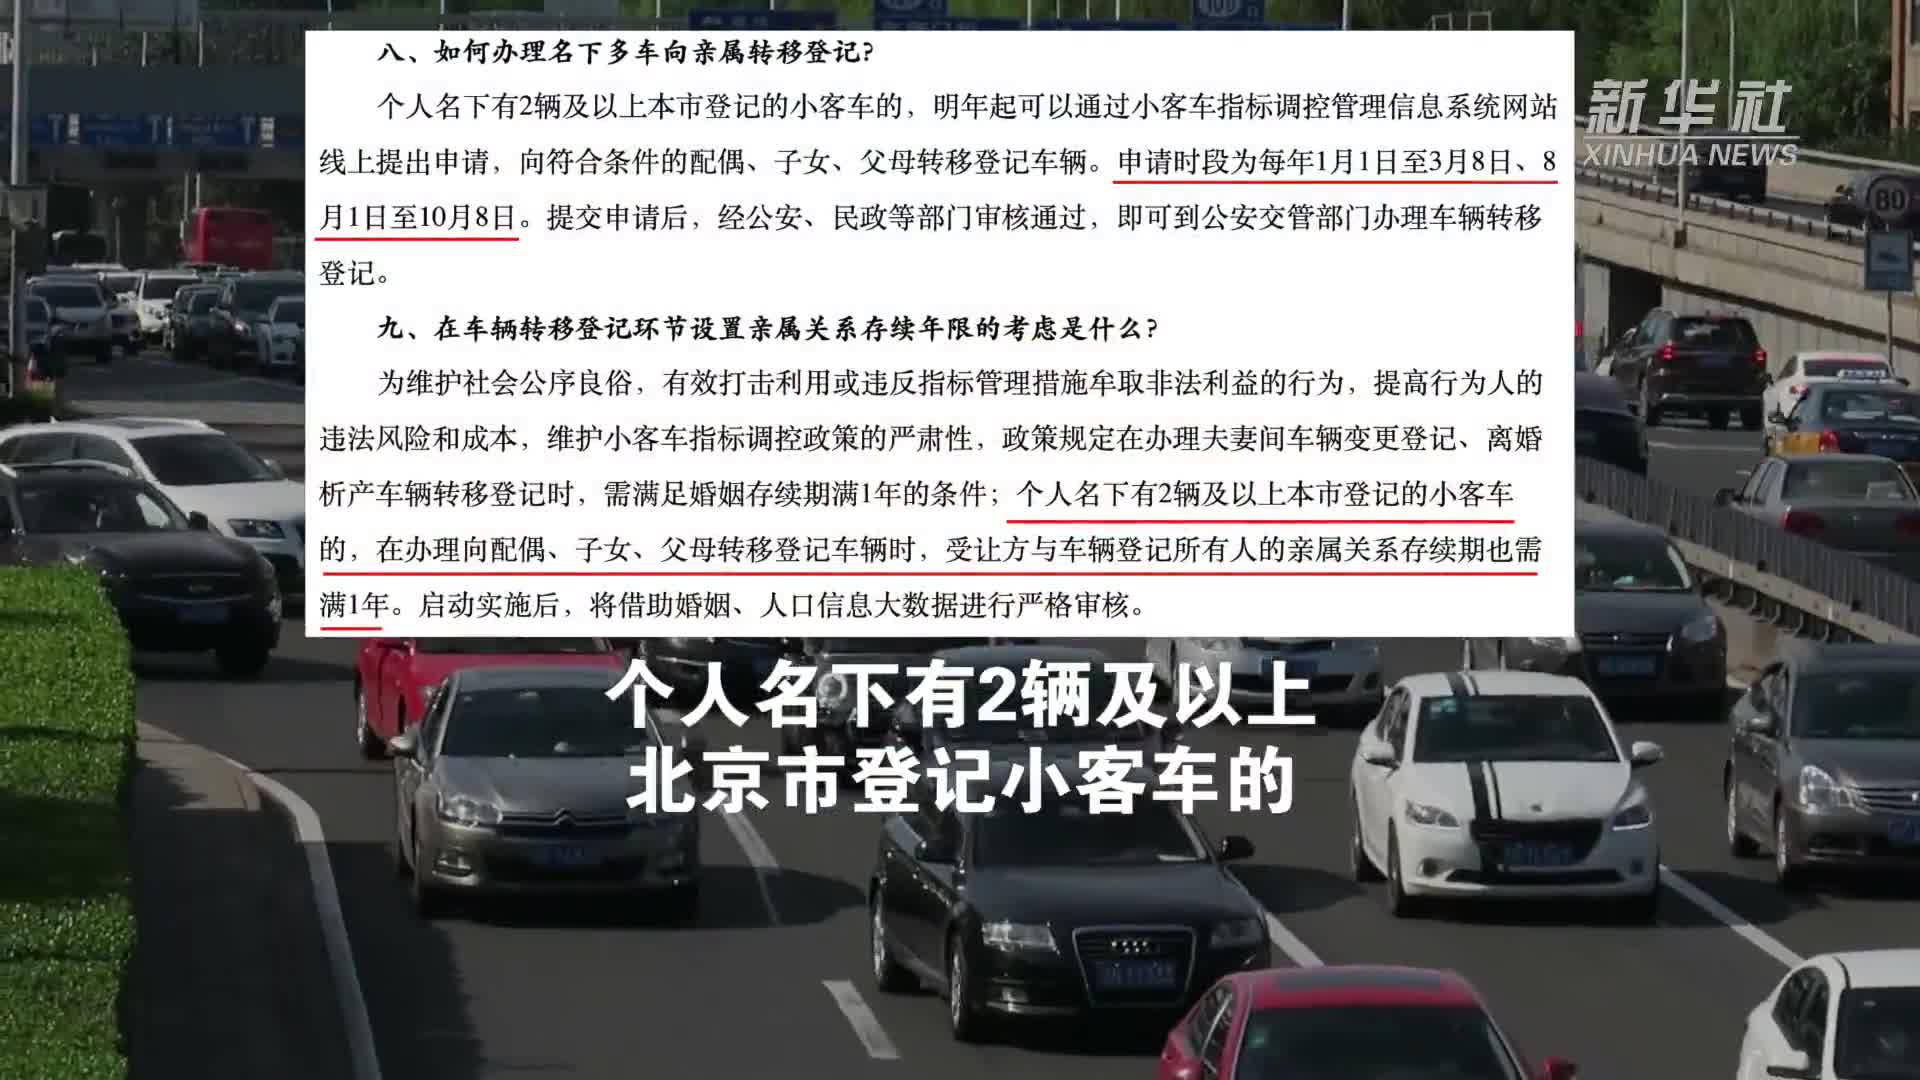 北京小客车摇号新政发布 每人只能保留一个指标